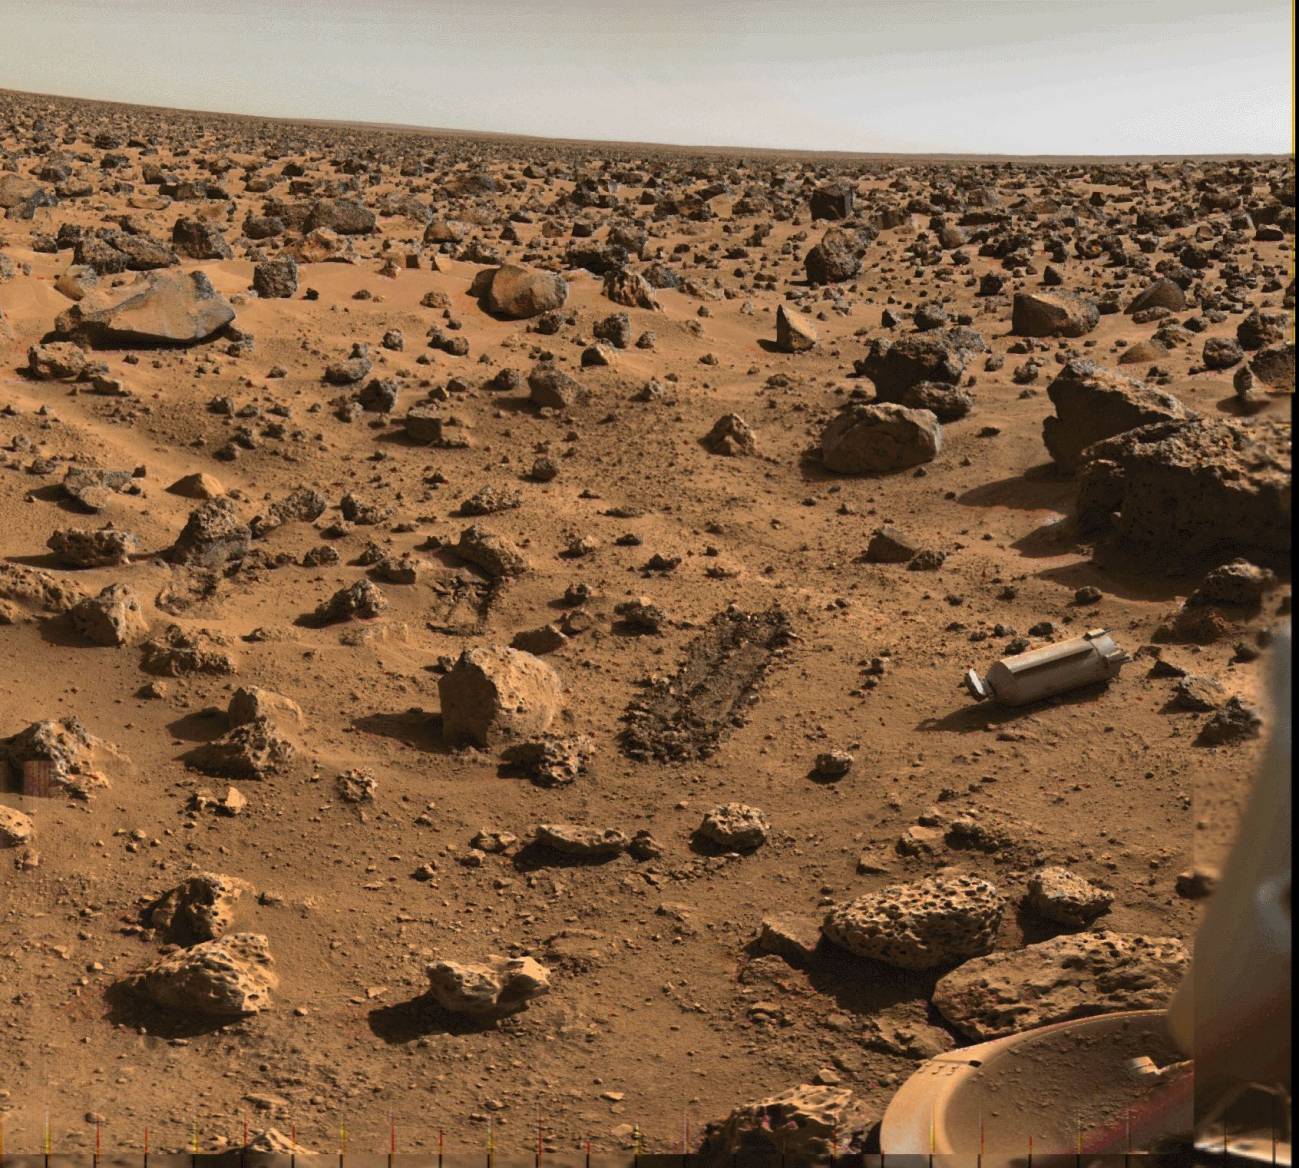 Investigadores andaluces participan en una misión a Marte en 2011